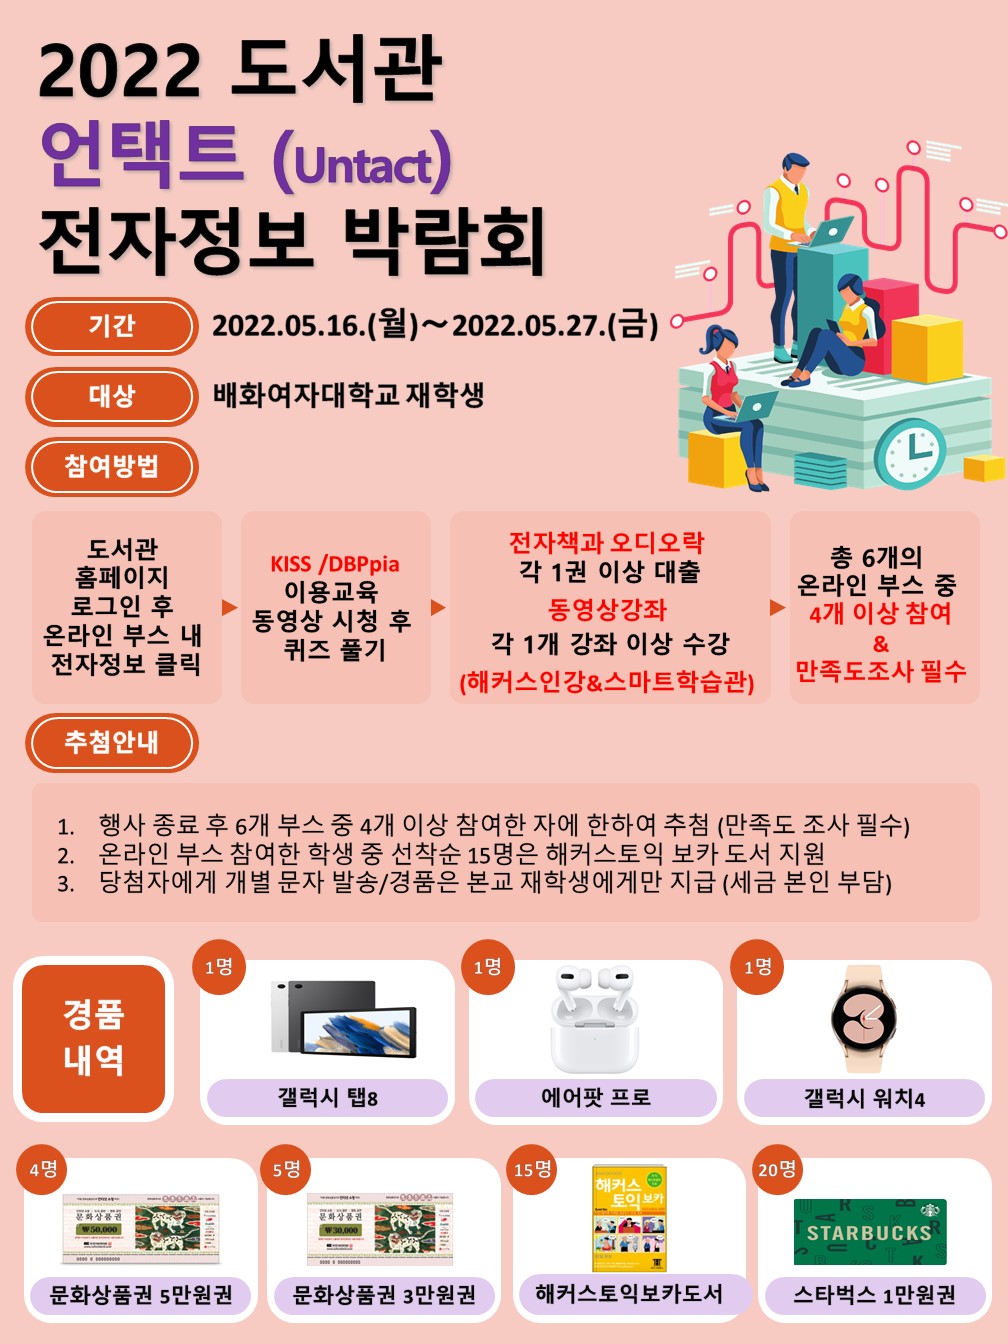 [행사종료]2022 도서관 언택트 전자정보 박람회 -6.7(화) 발표 예정입니다.